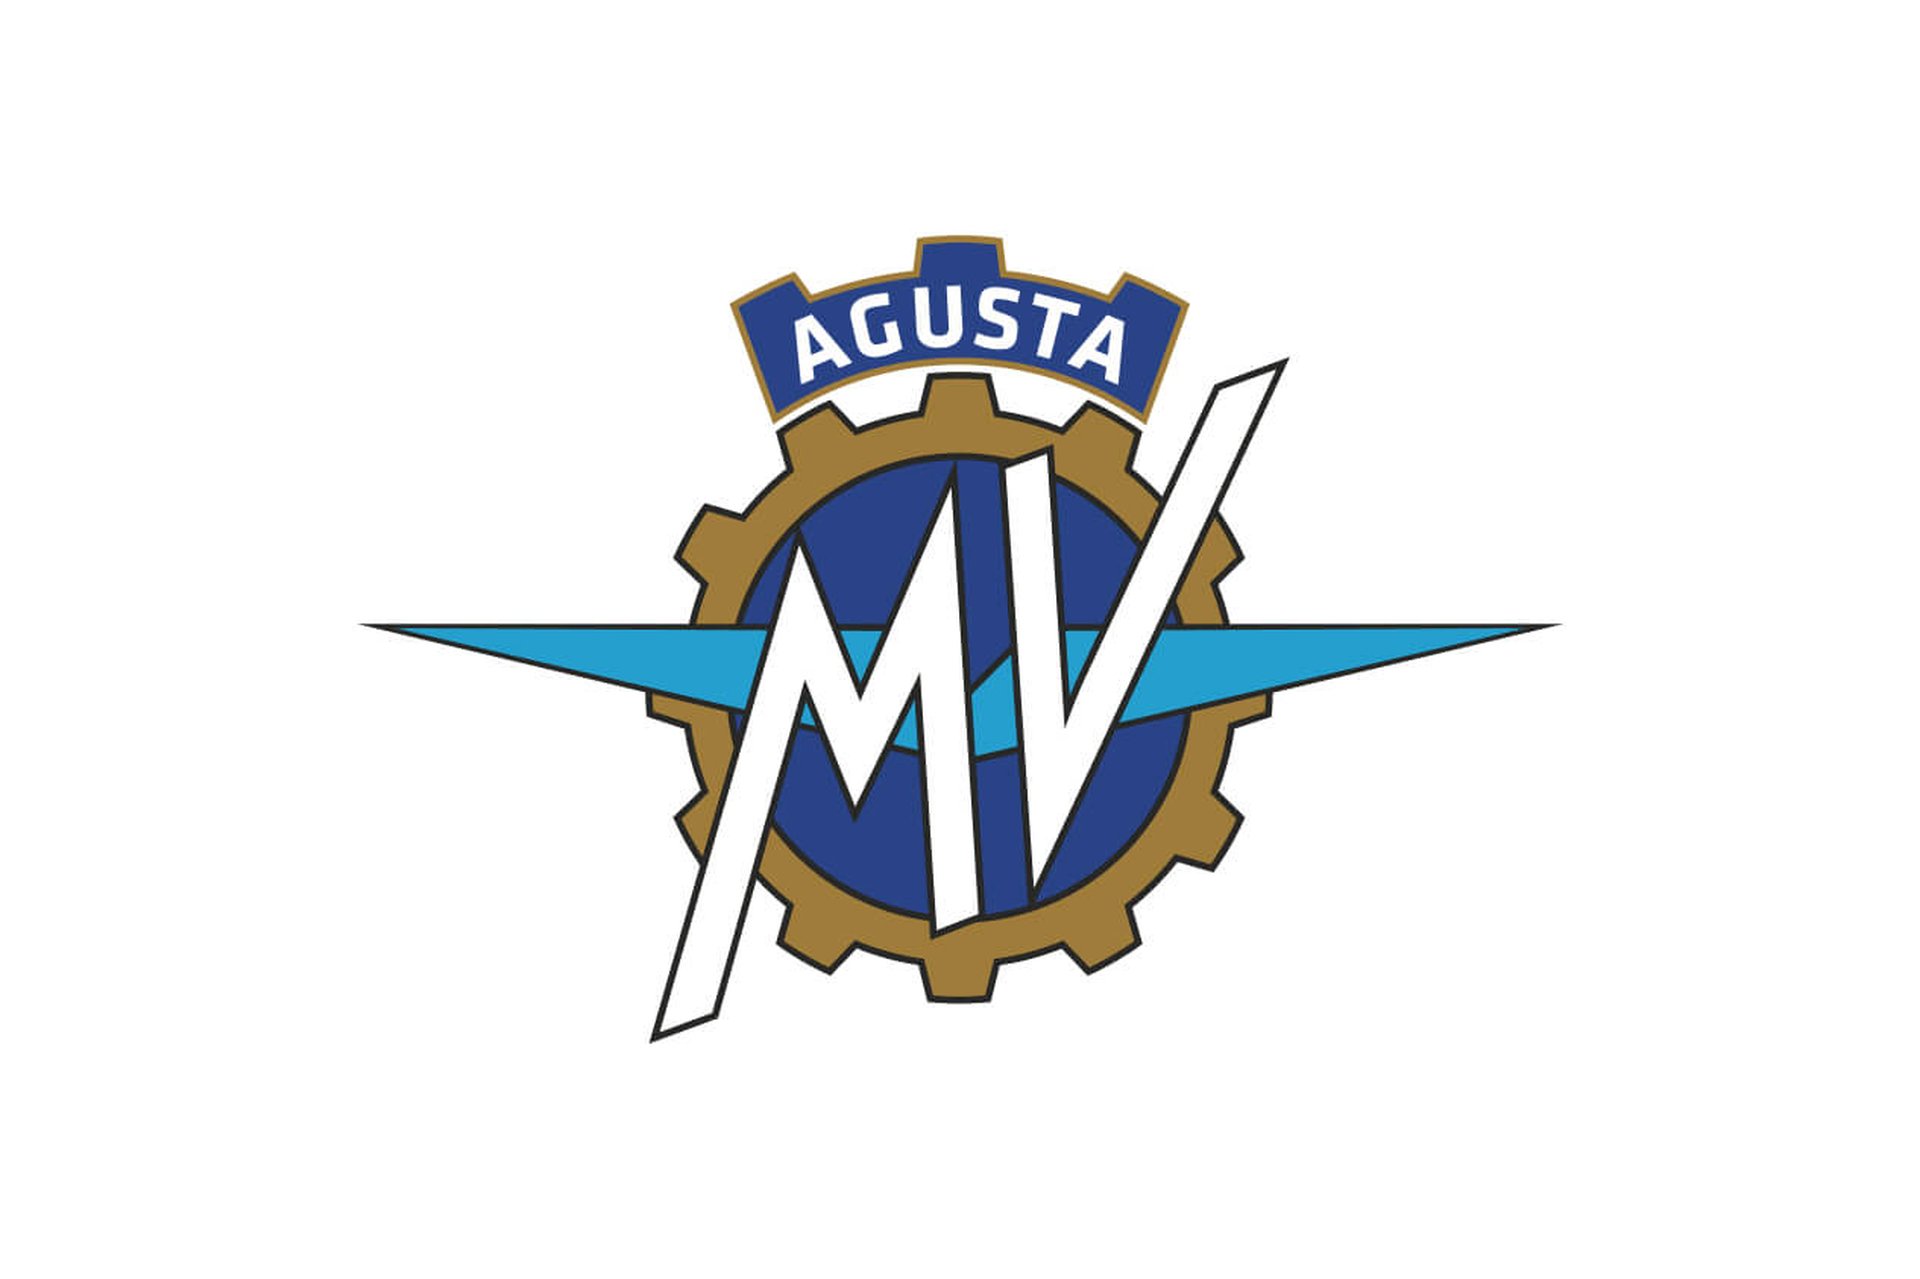 MV AGUSTA ANNUNCIA L’USCITA DEFINITIVA DAL CONCORDATO  PREVENTIVO IN CONTINUITA’ AZIENDALE